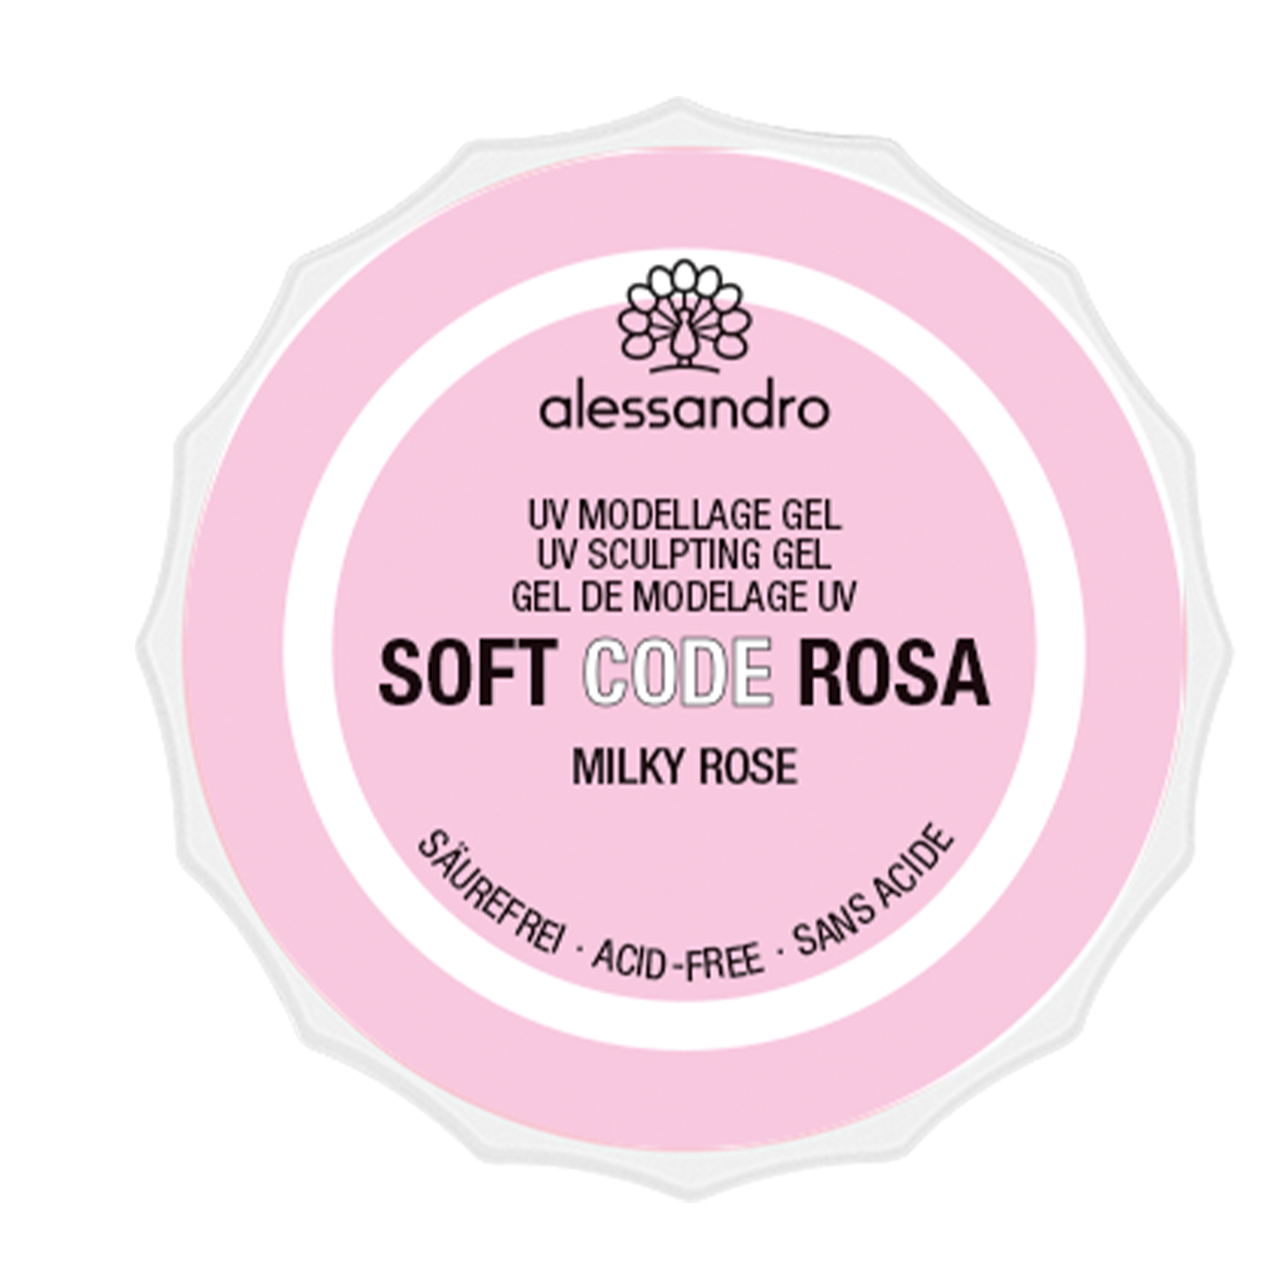 Soft Code Rosa, 50g